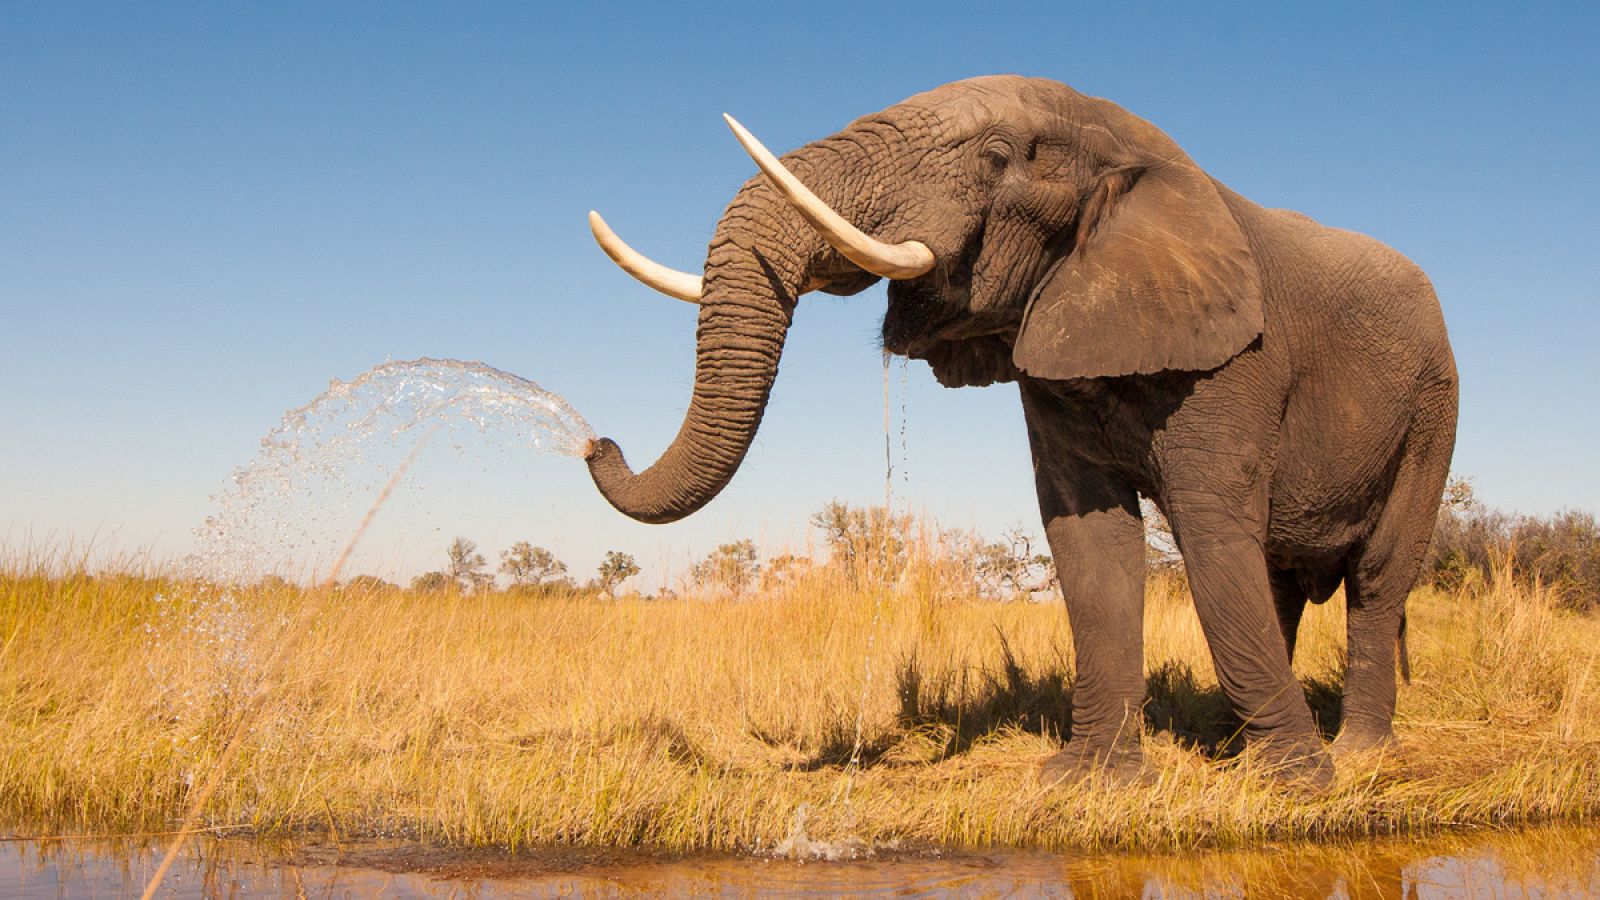 Los elefantes viven alrededor de 70 años y la incidencia de cáncer en ellos es muy baja.